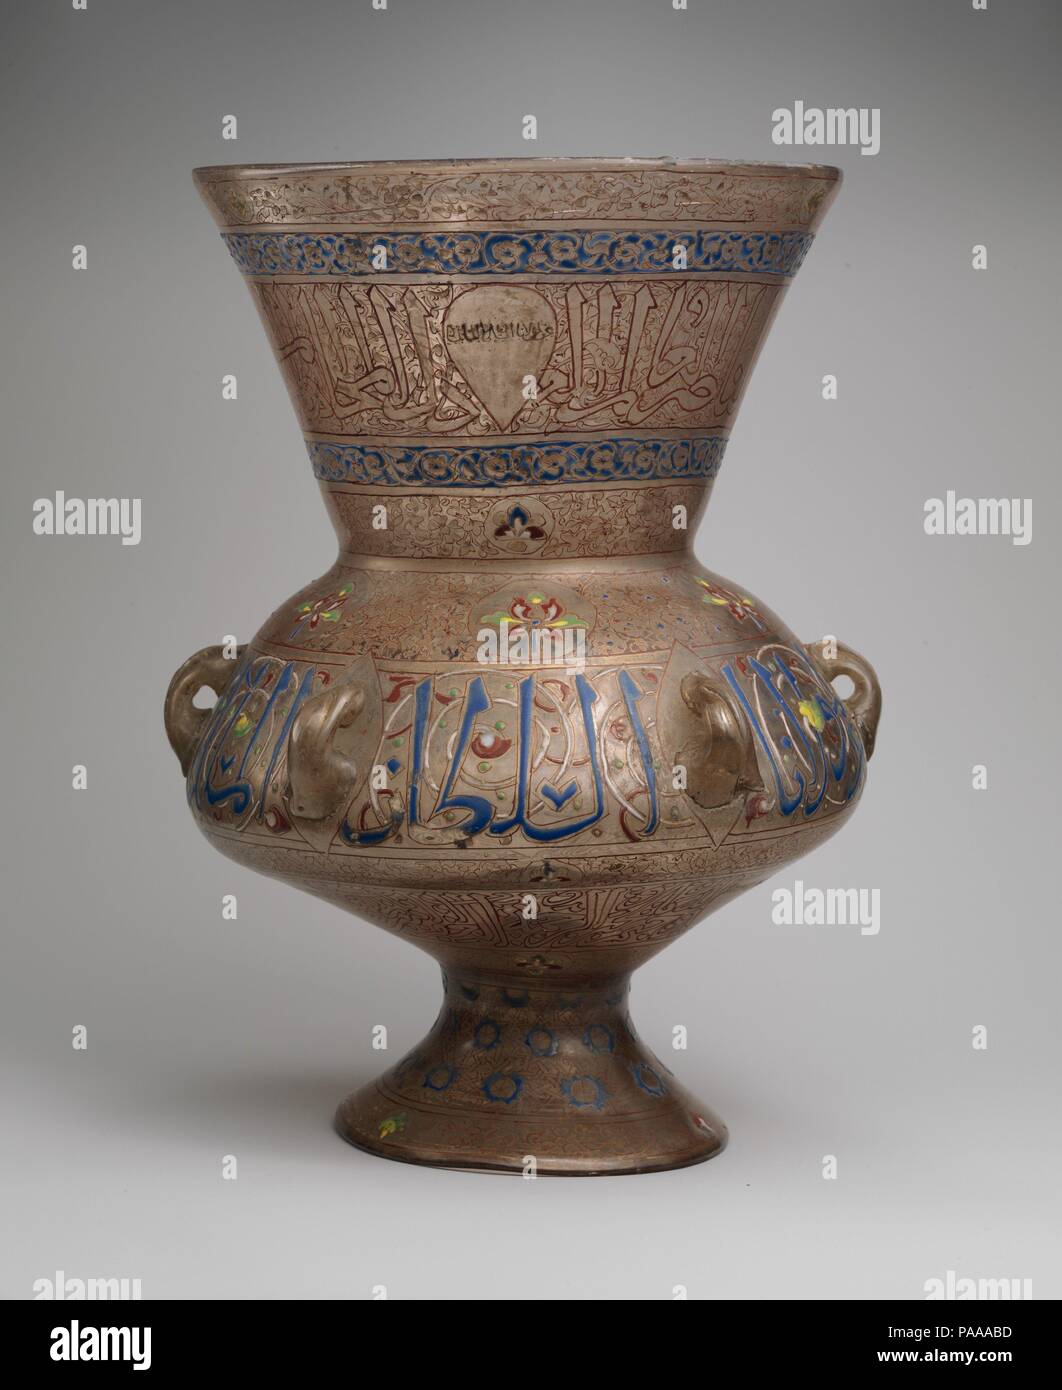 Mosque Lamp Bearing the Name of the Mamluk Sultan al-Malik al-Nasir. Dimensions: H. 13 in. (33 cm)  Diam. of rim 8 5/8 in. (21.9 cm). Date: ca. 1340. Museum: Metropolitan Museum of Art, New York, USA. Stock Photo